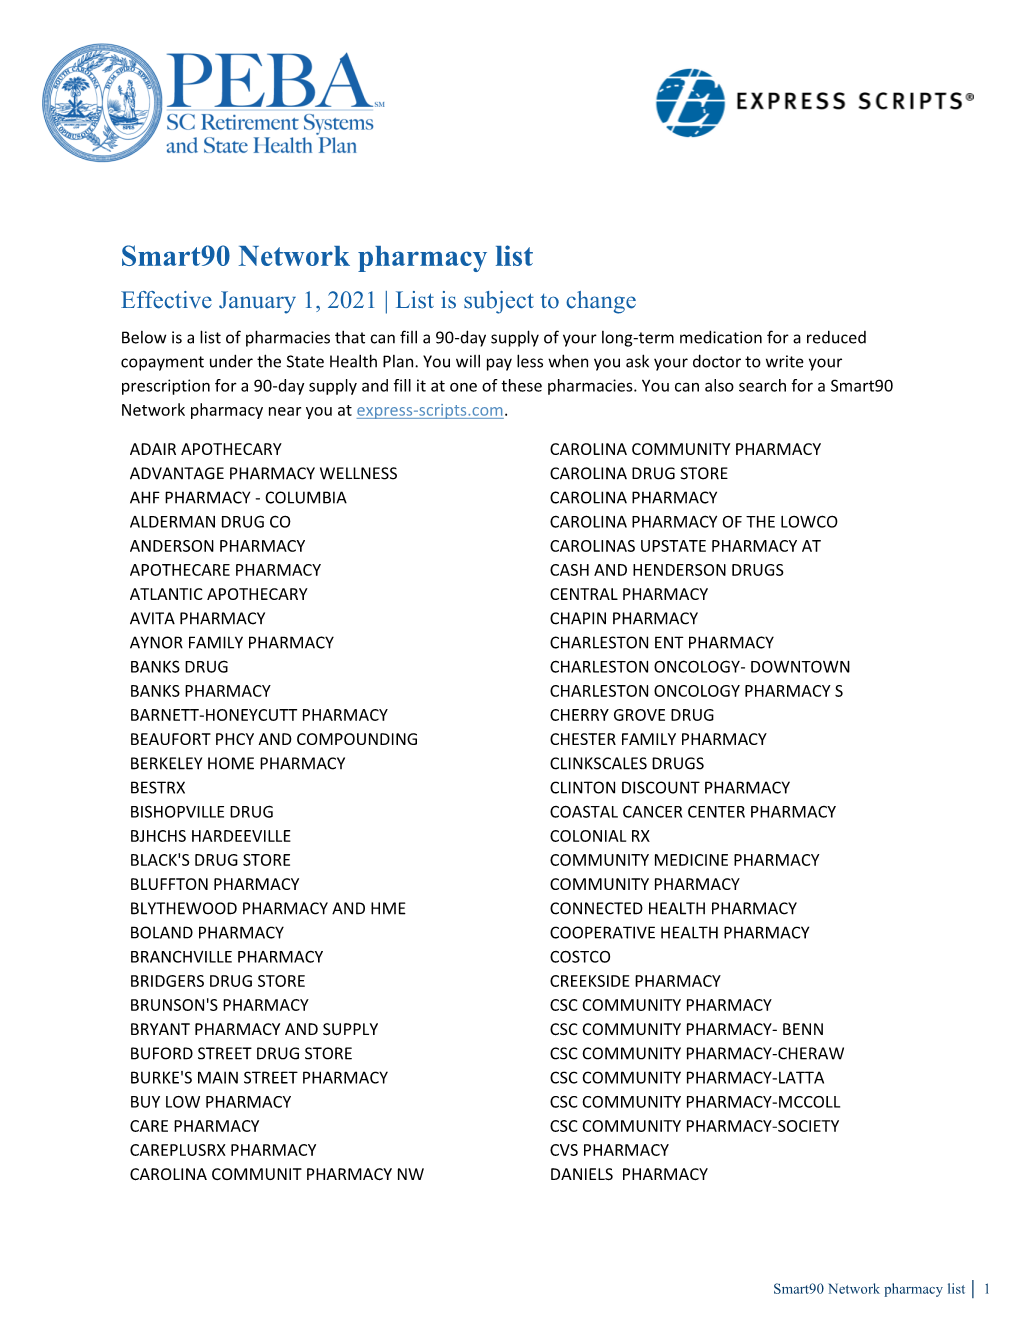 Smart90 Network Pharmacy List